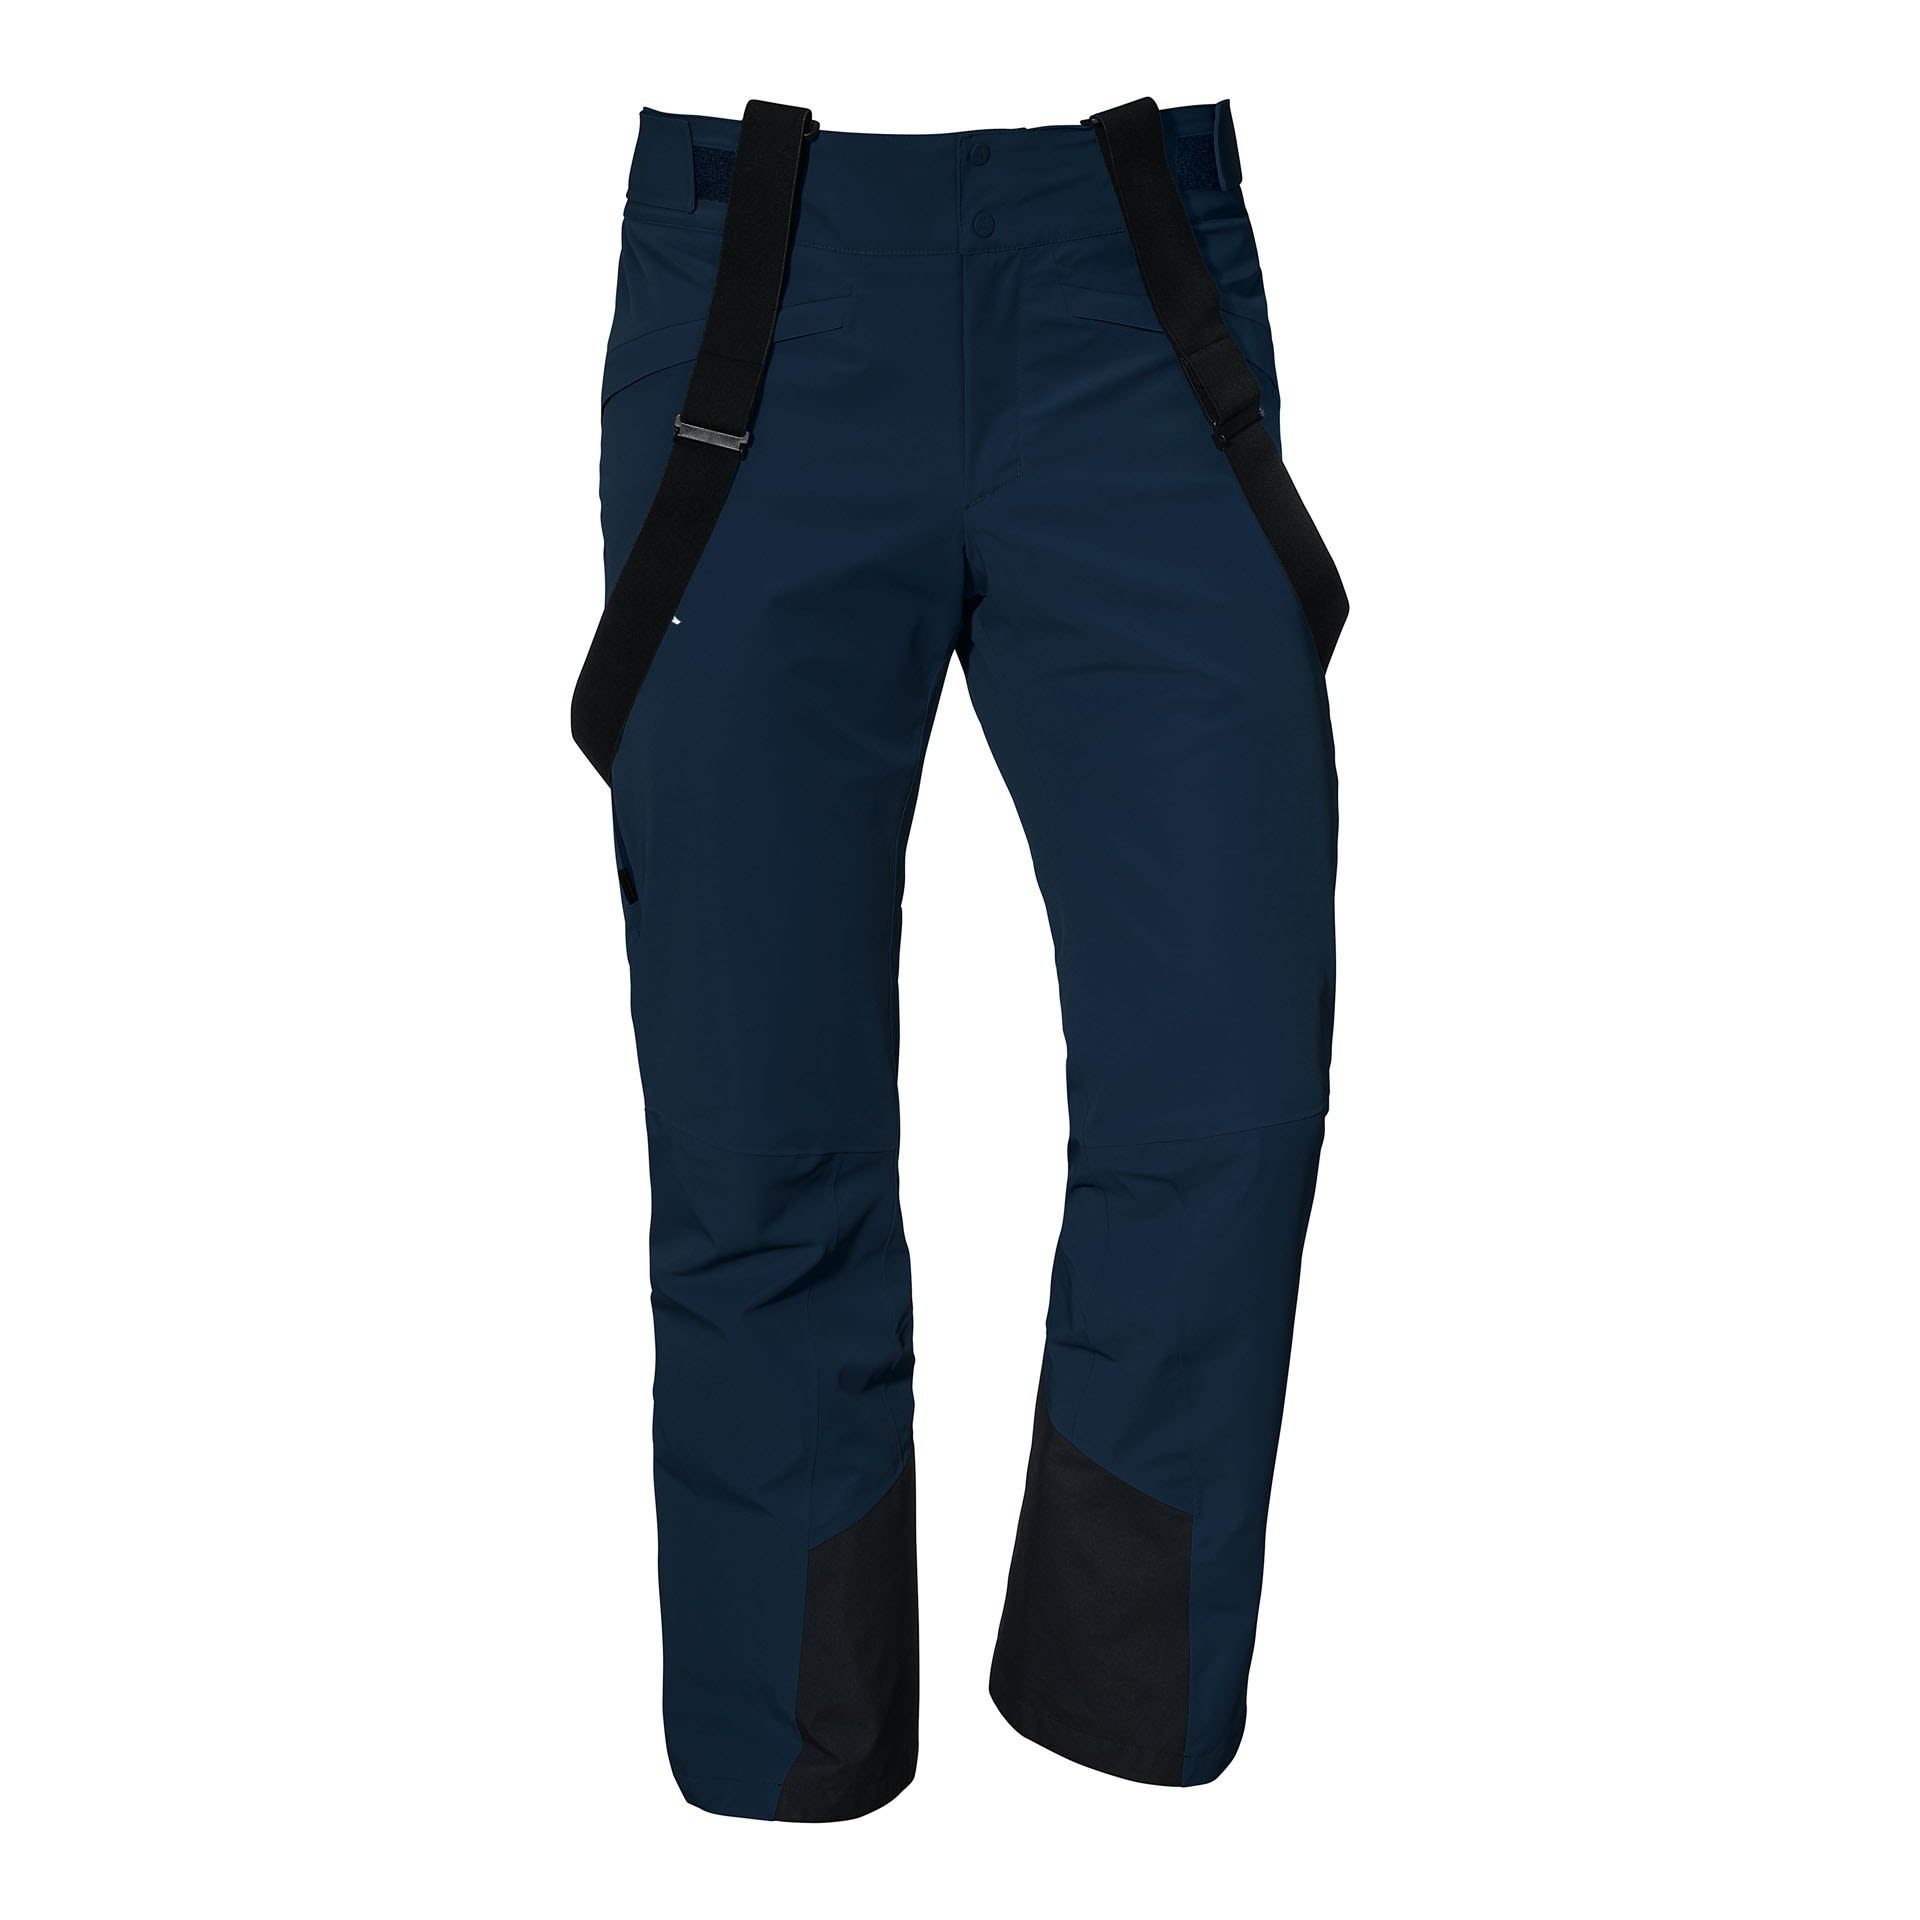 Latzhose Bund elastischer Schöffel Pants M, Scalottas Ski und Komfortabler, ergonomischer